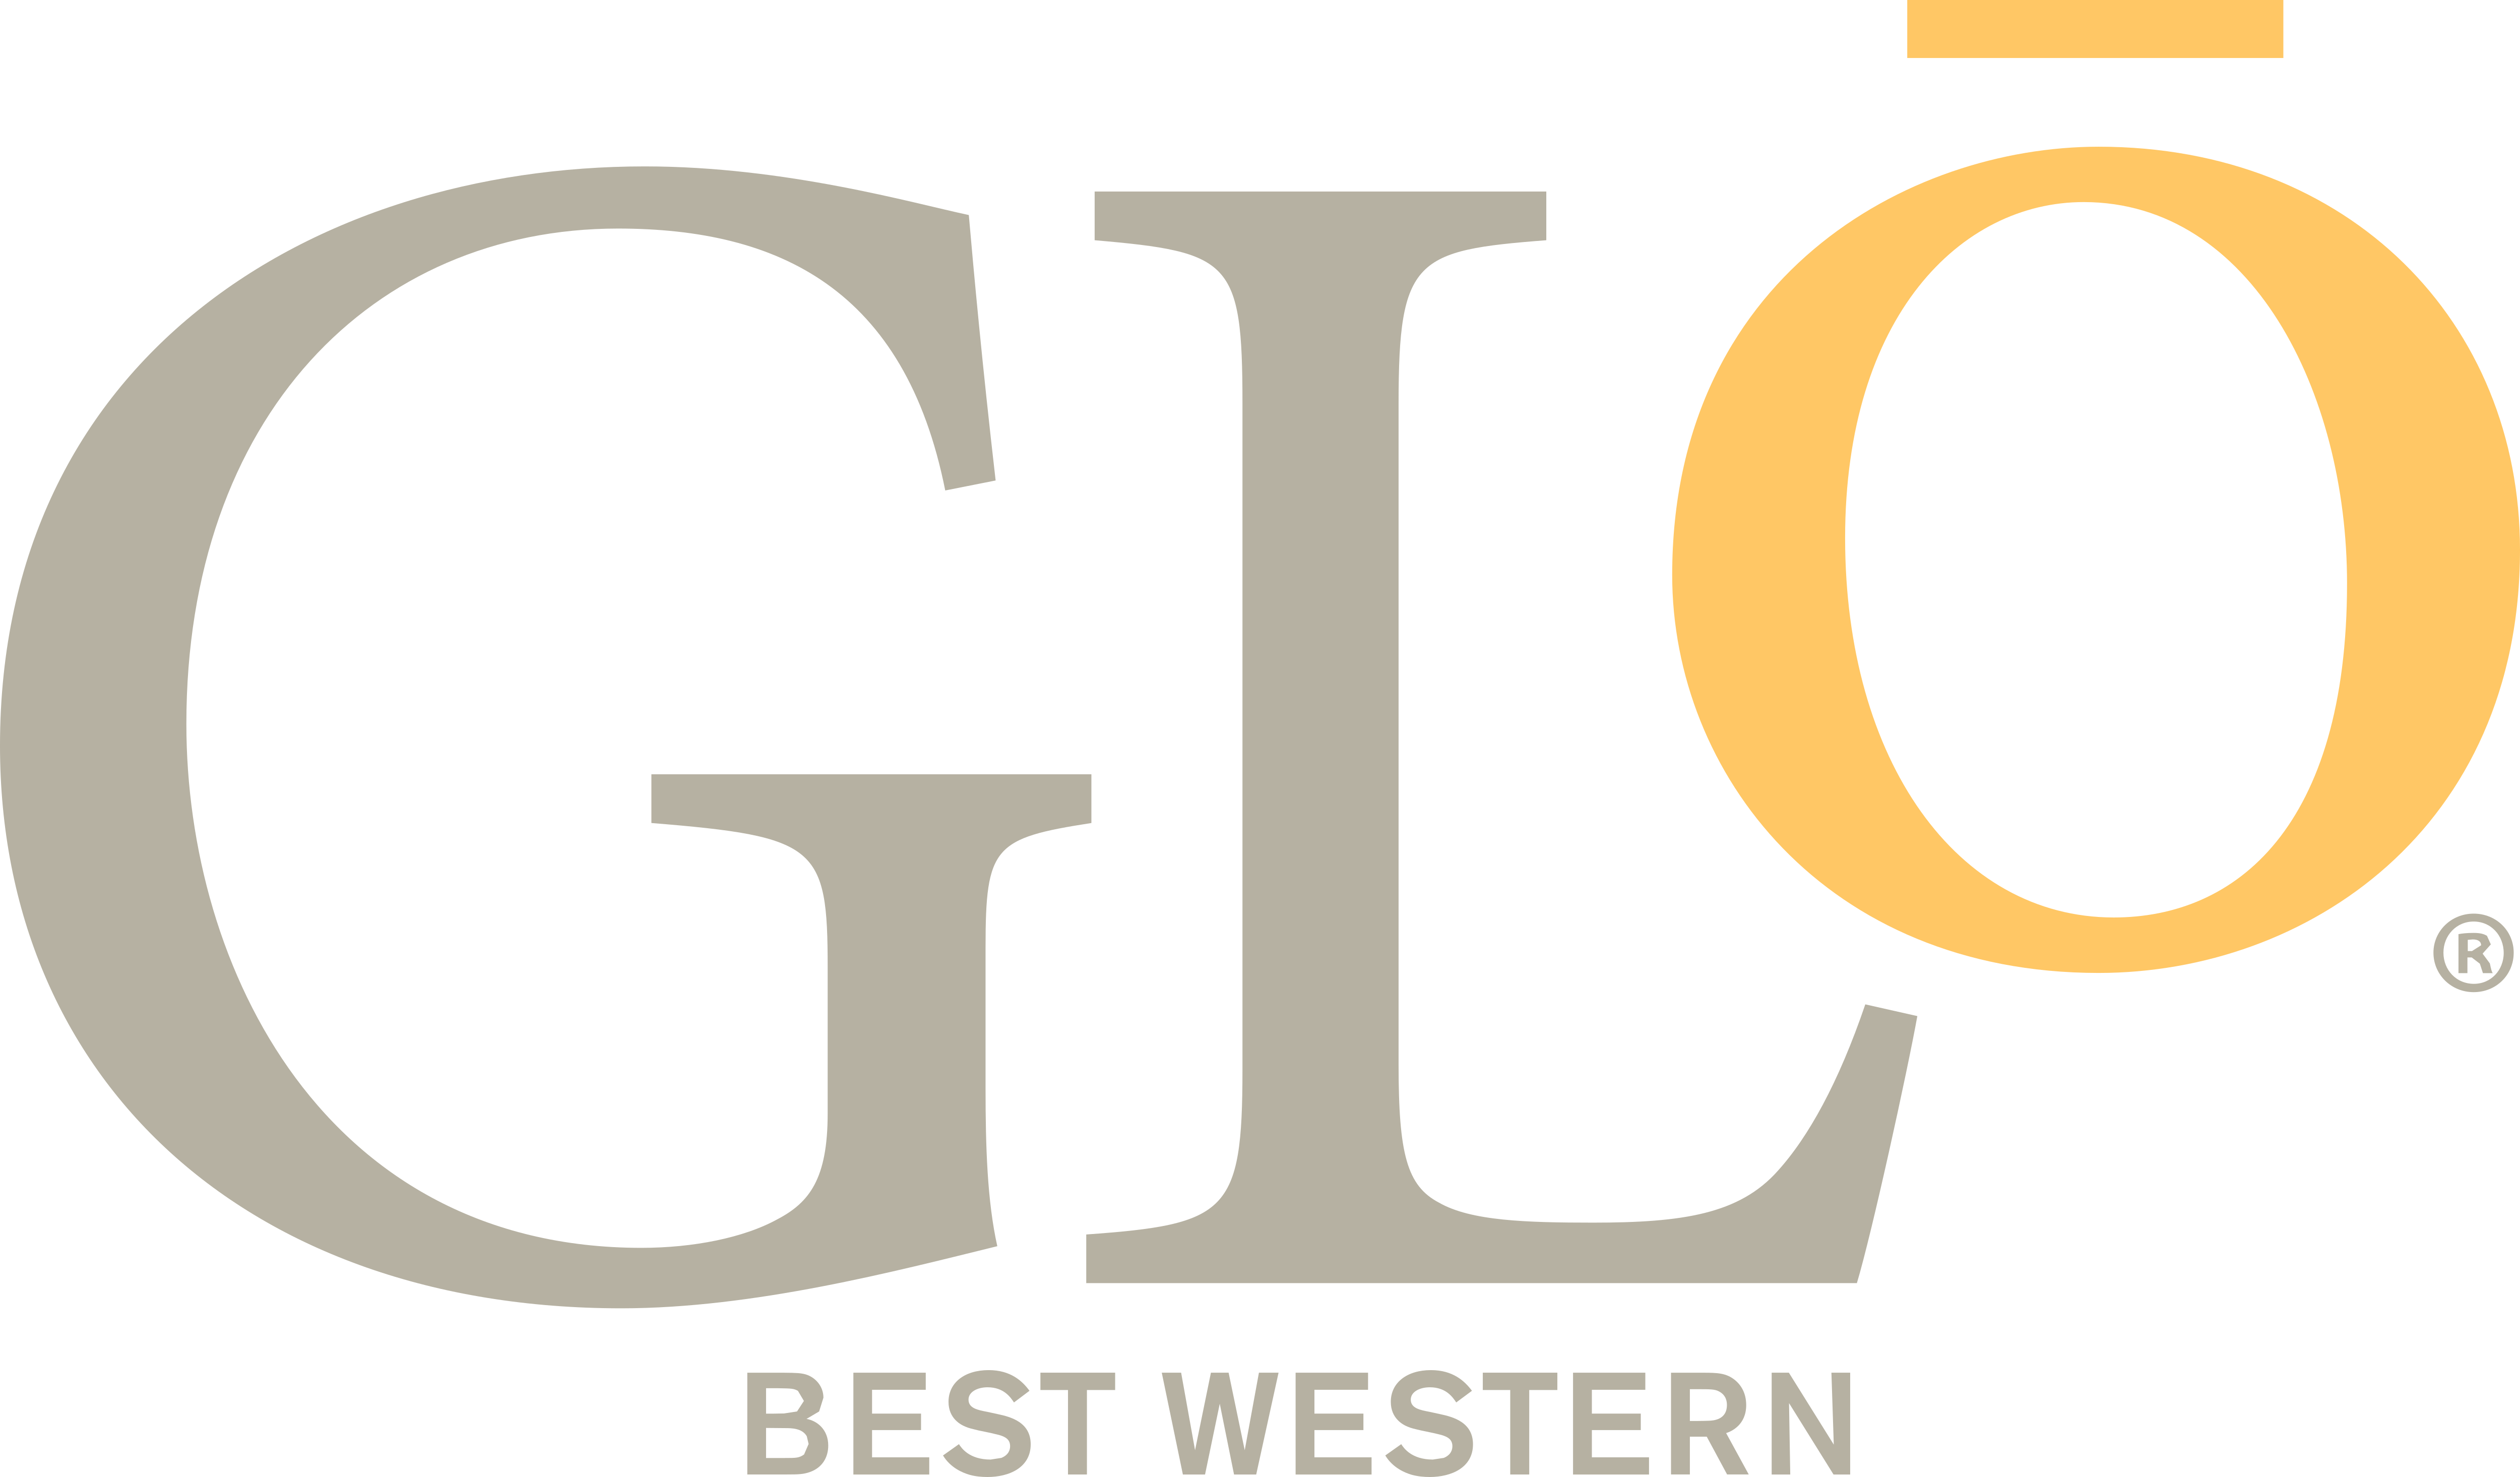 Best Western Glo Logos Download